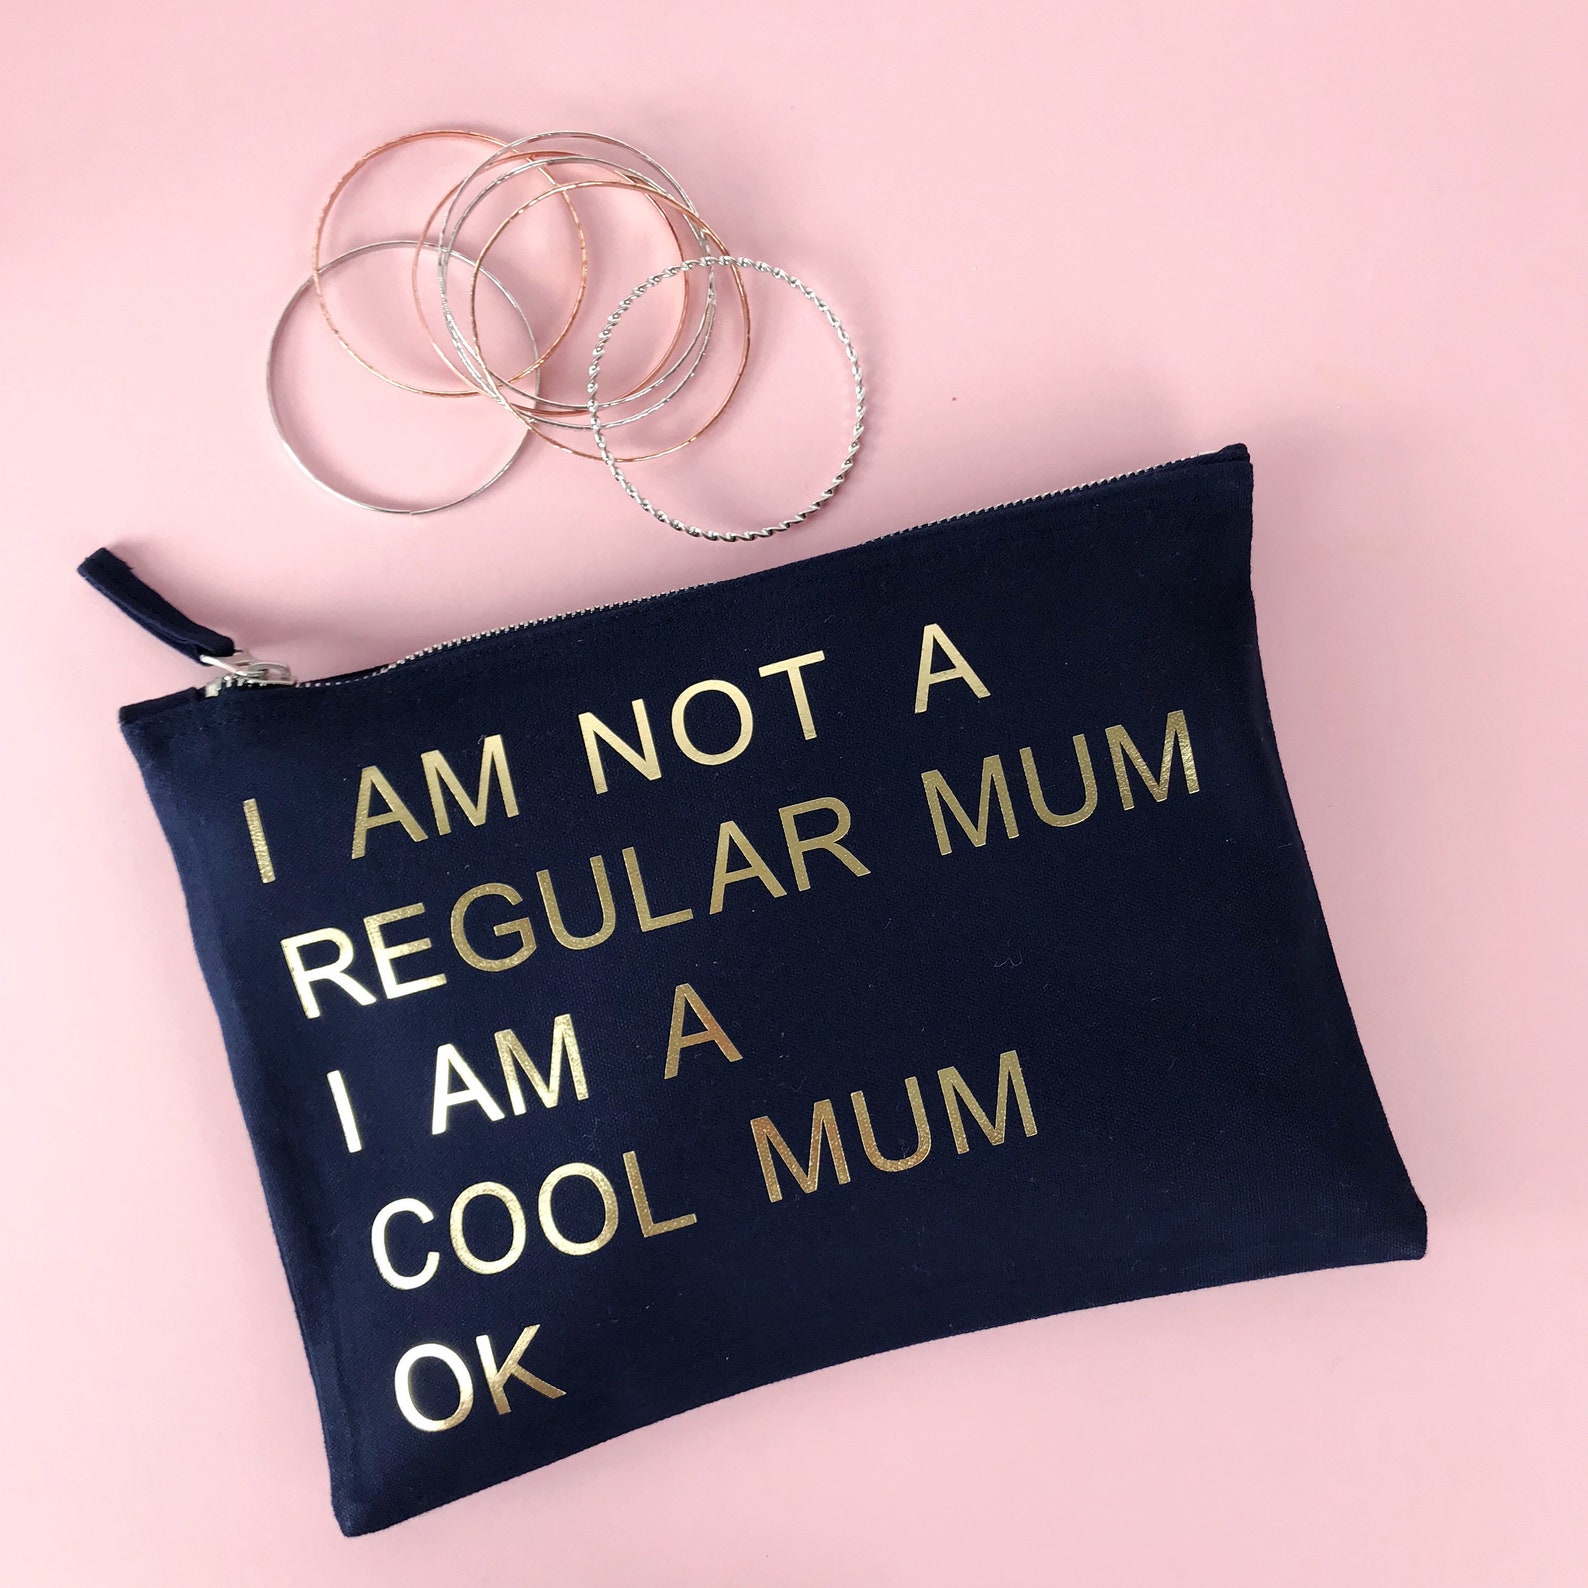 My mum write shopping. My mum made it сумка. My mum made it Bag. My mum made it сумка купить. My mum made it одежда сумка купить.